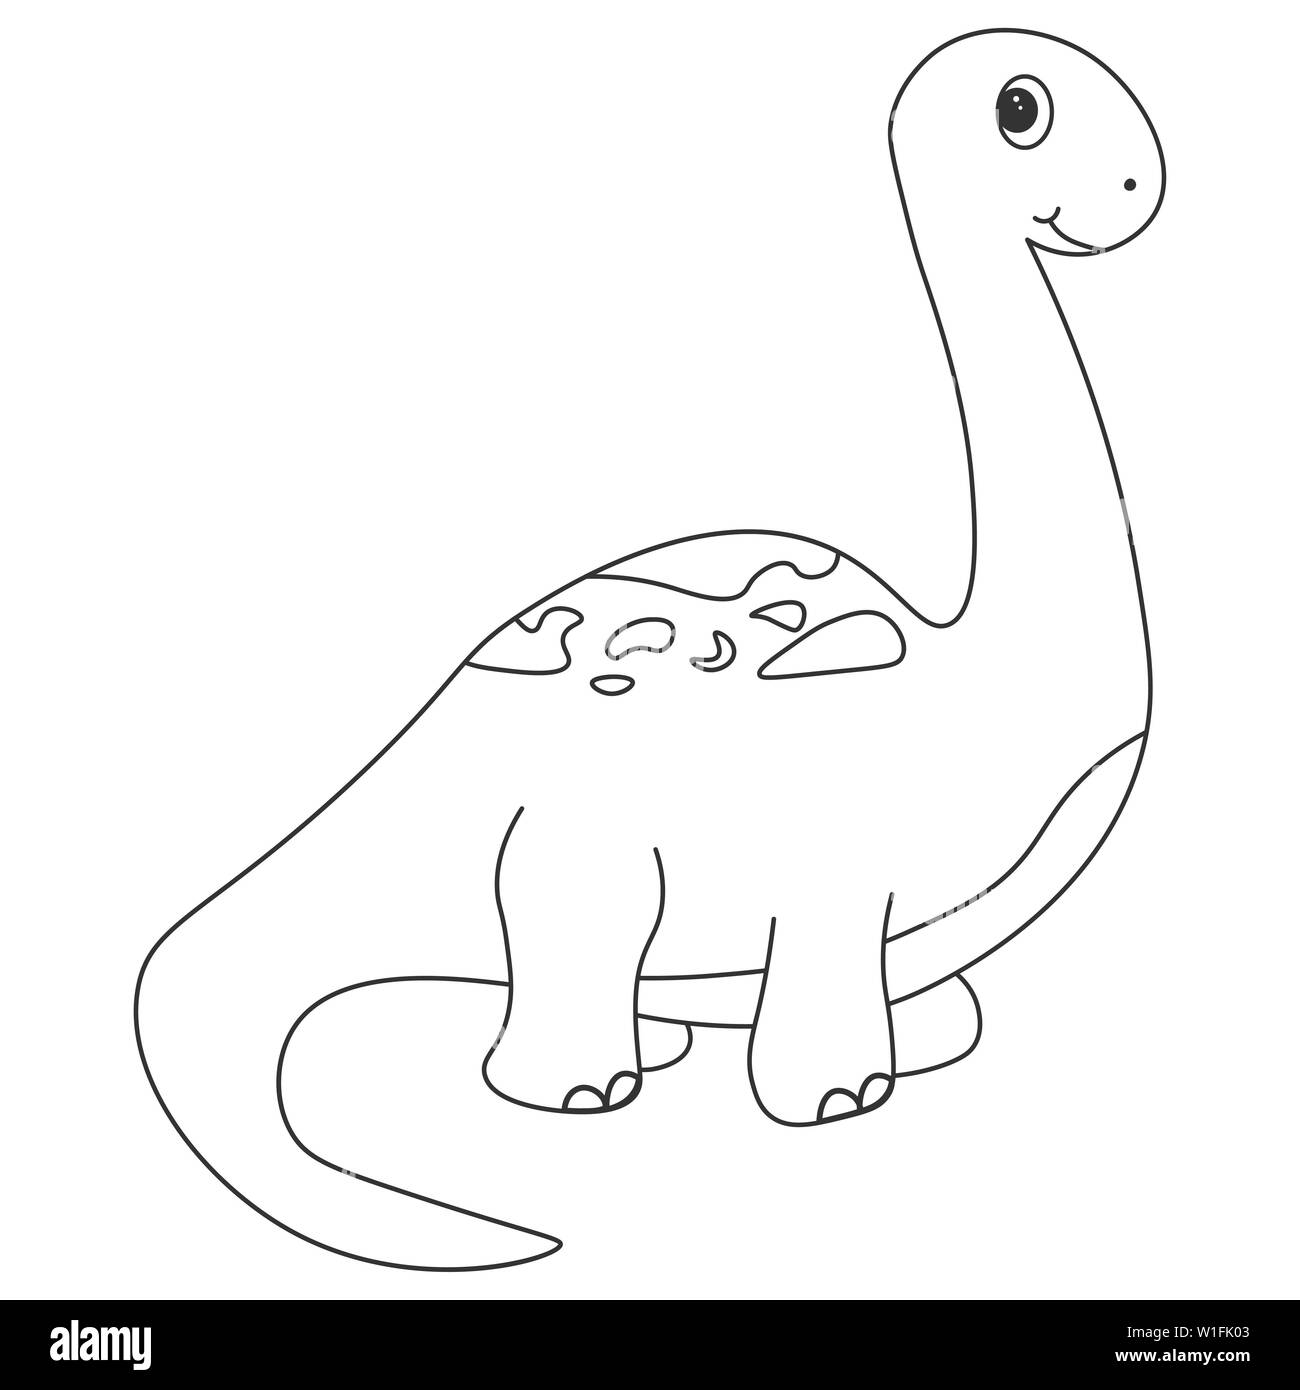 Contour de dinosaurus brachiosaure, qui peut être utilisé comme colorant. Isolé sur fond blanc. illustration. Banque D'Images